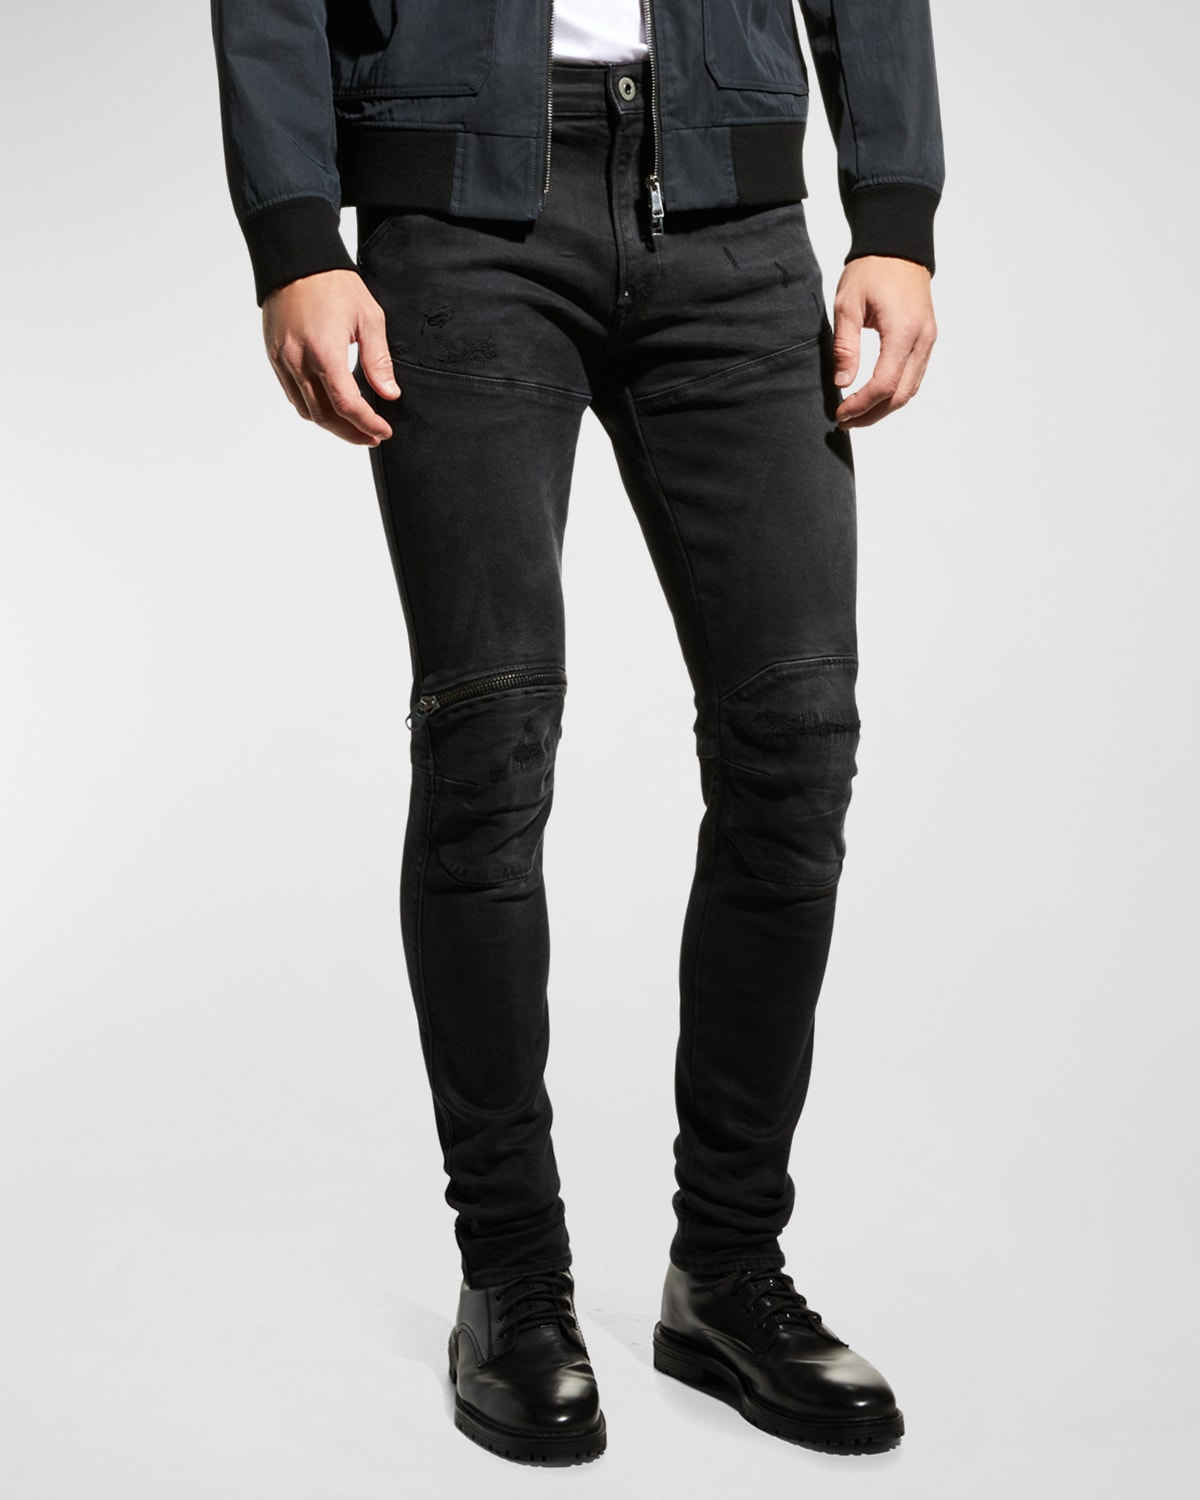 Men's 5620 3D Zip-Knee Skinny Jeans